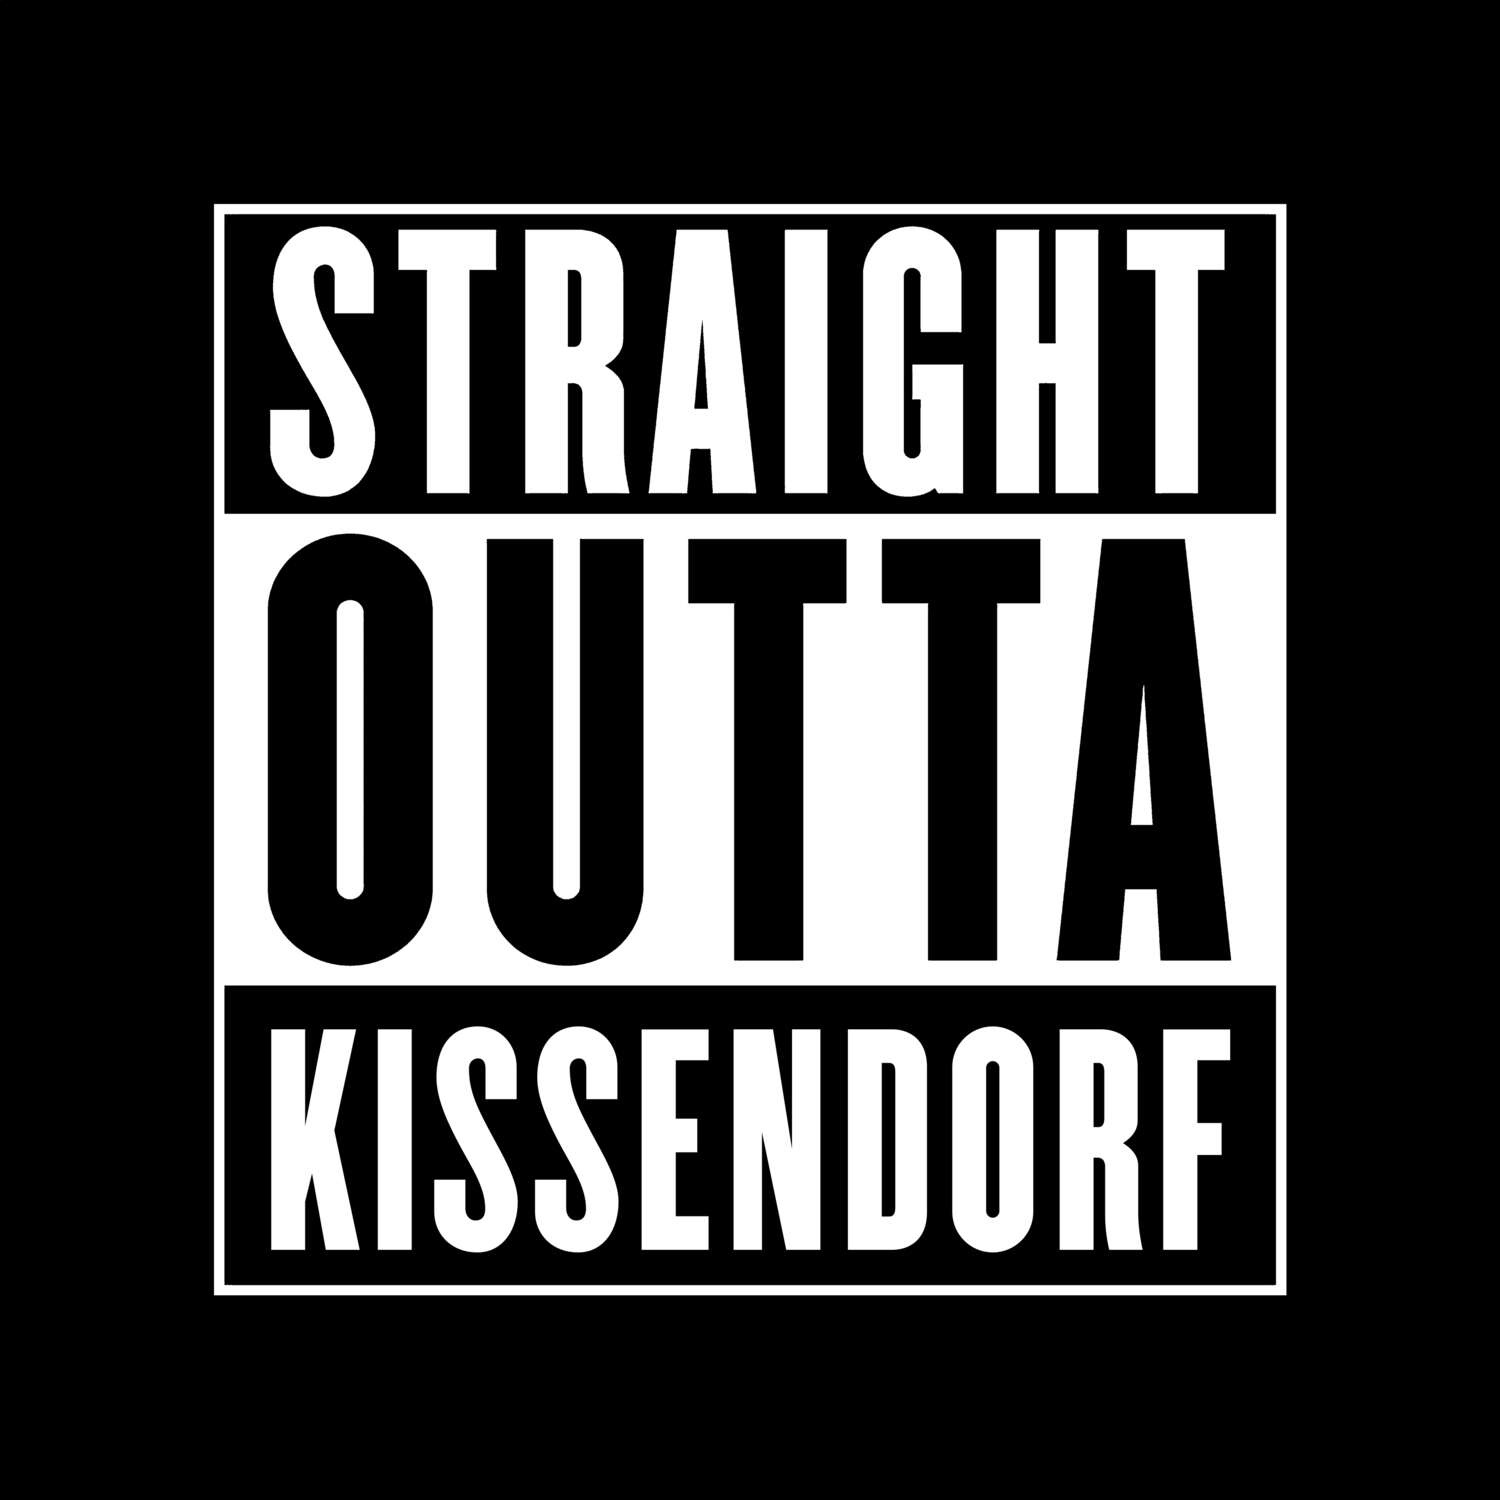 Kissendorf T-Shirt »Straight Outta«